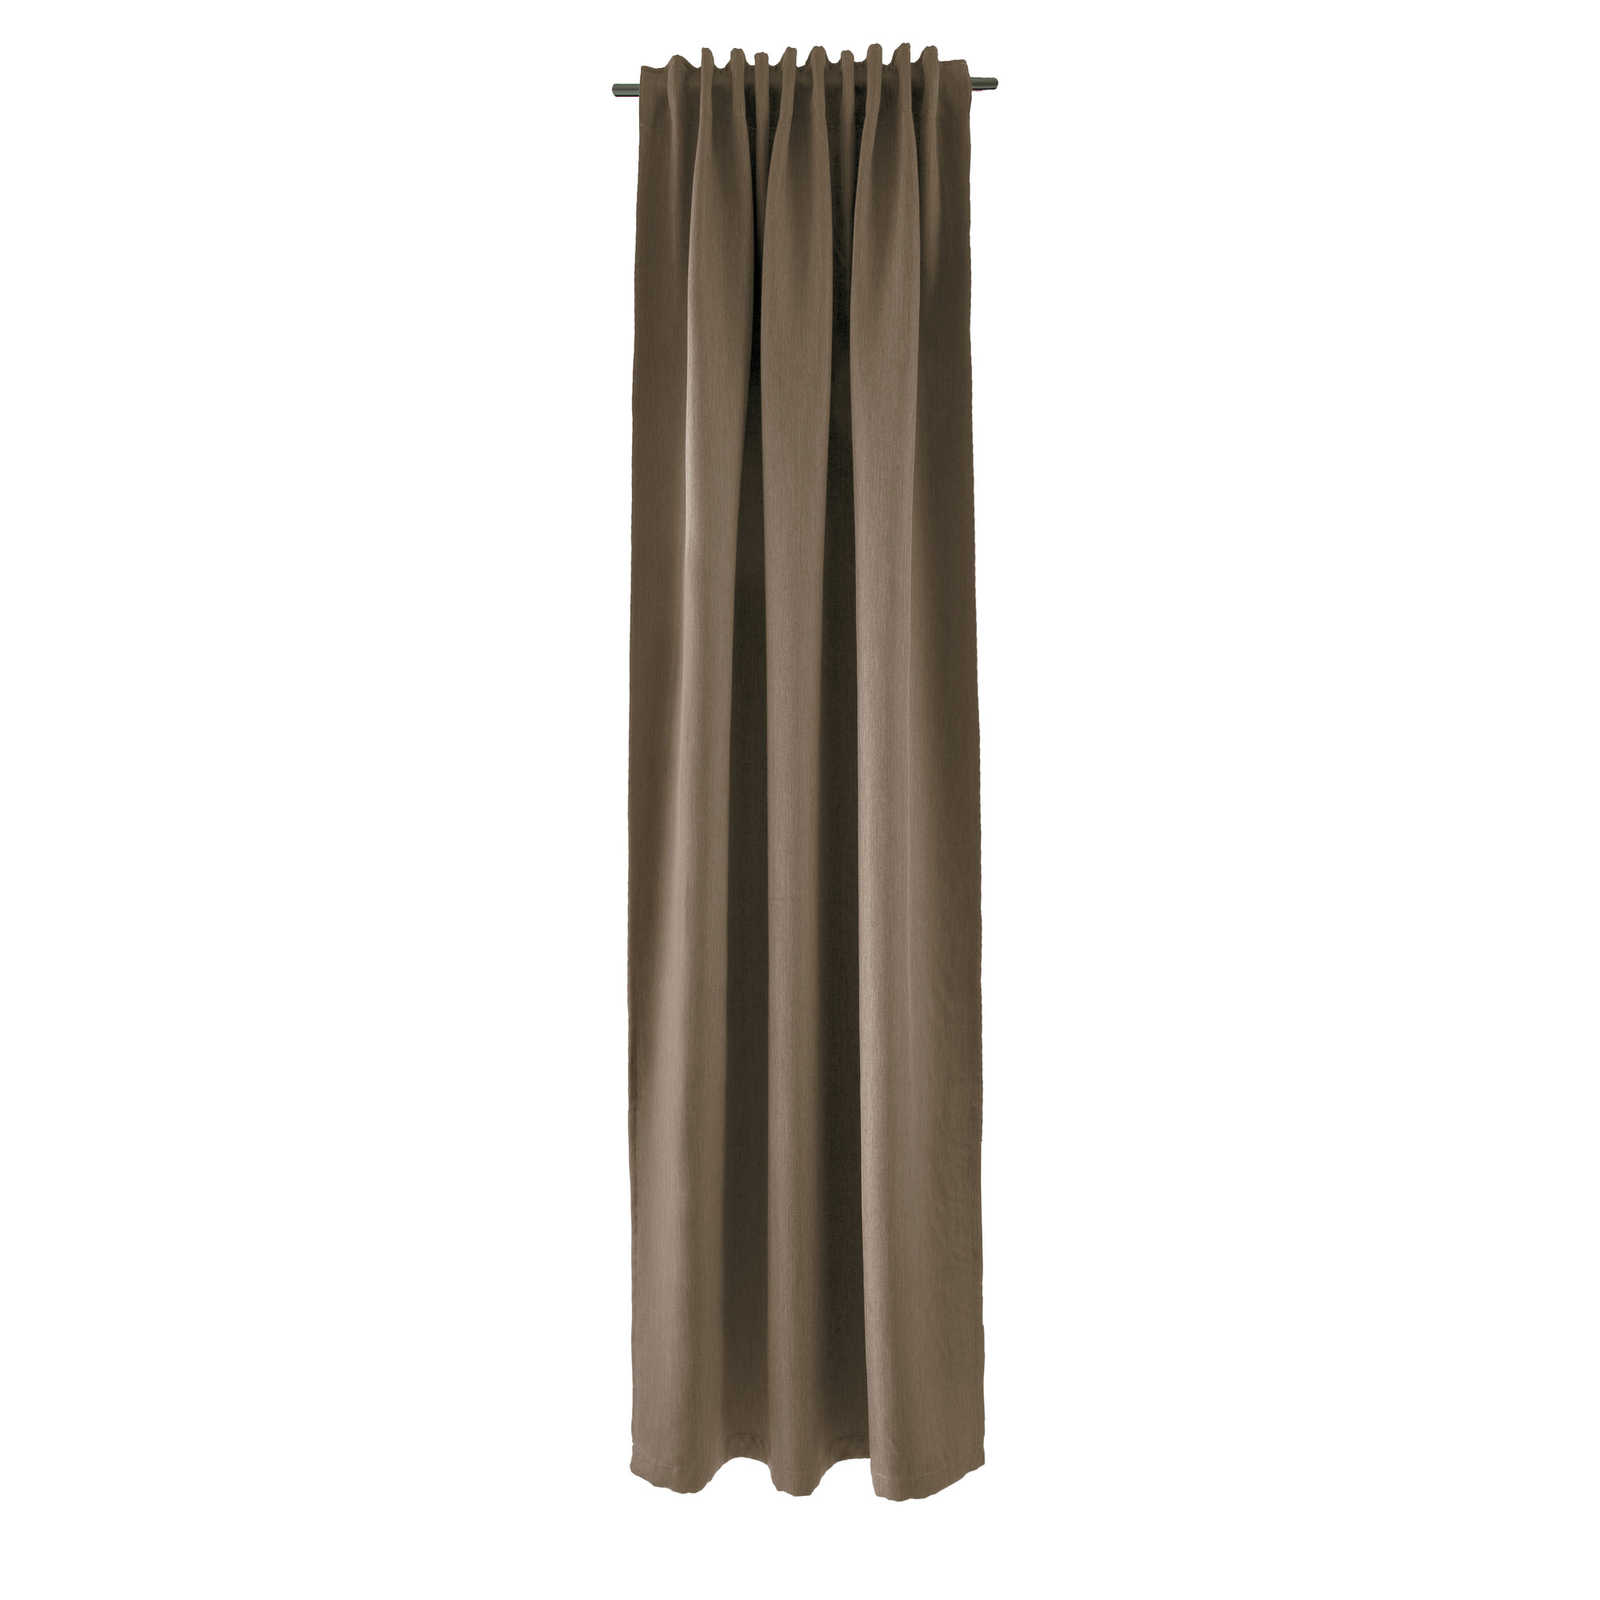 Echarpe décorative à passants 140 cm x 245 cm fibre synthétique marron
